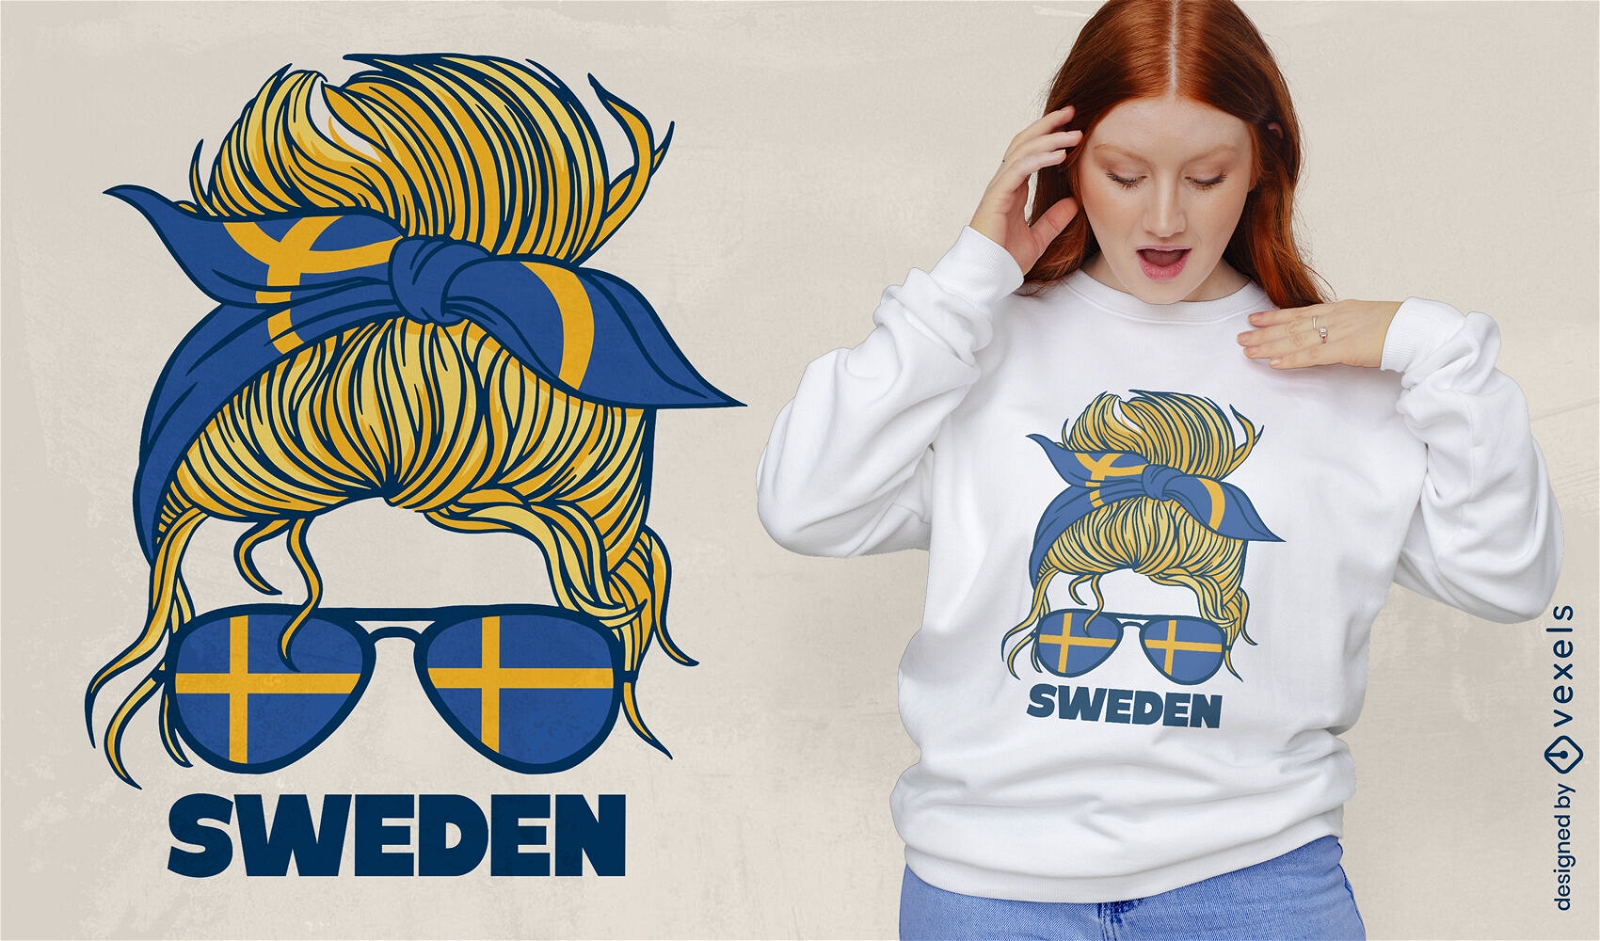 Diseño de camiseta de mujer sueca.